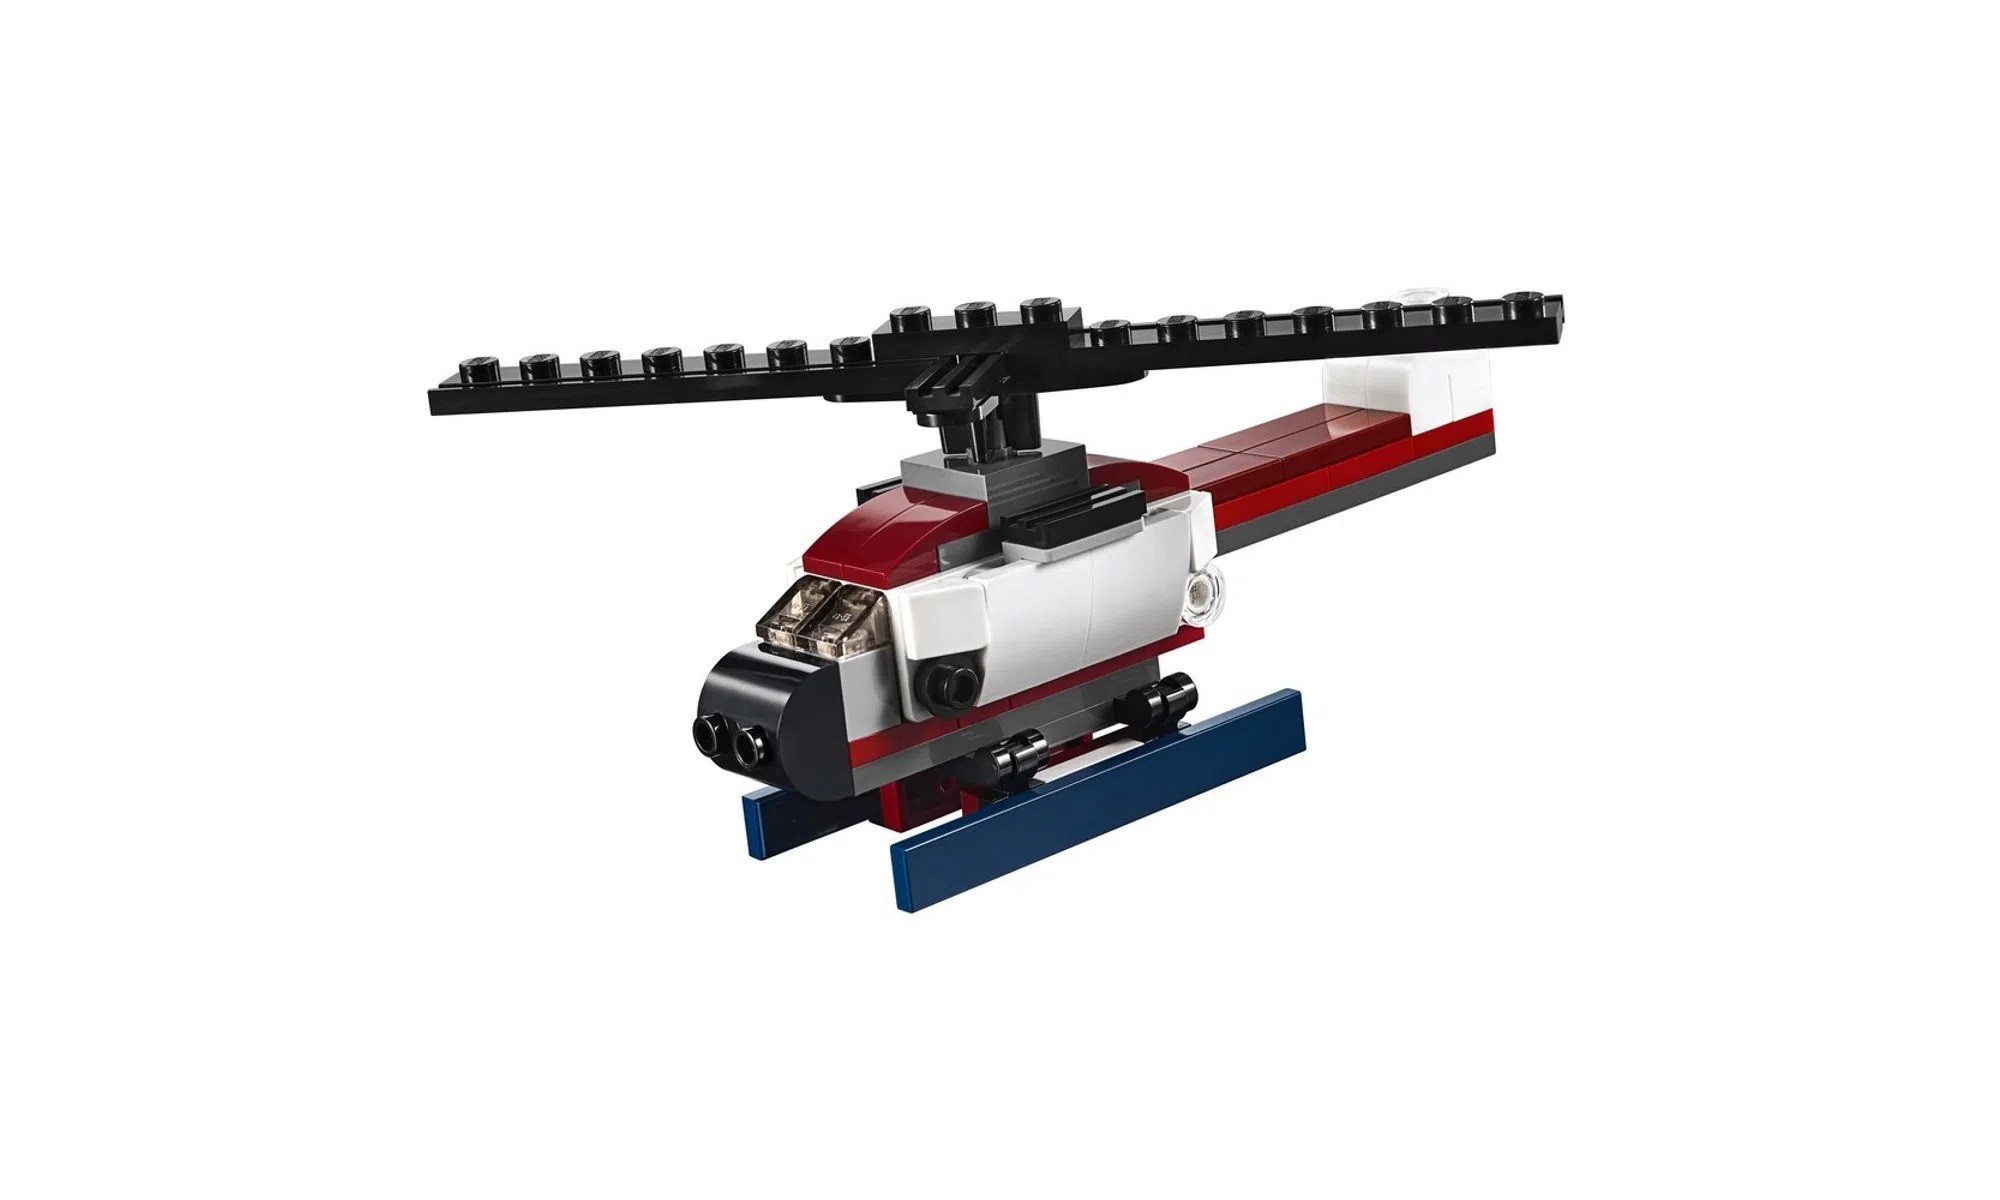 LEGO Creator - Modelo 3 Em 1: Veículo Transportador 31091